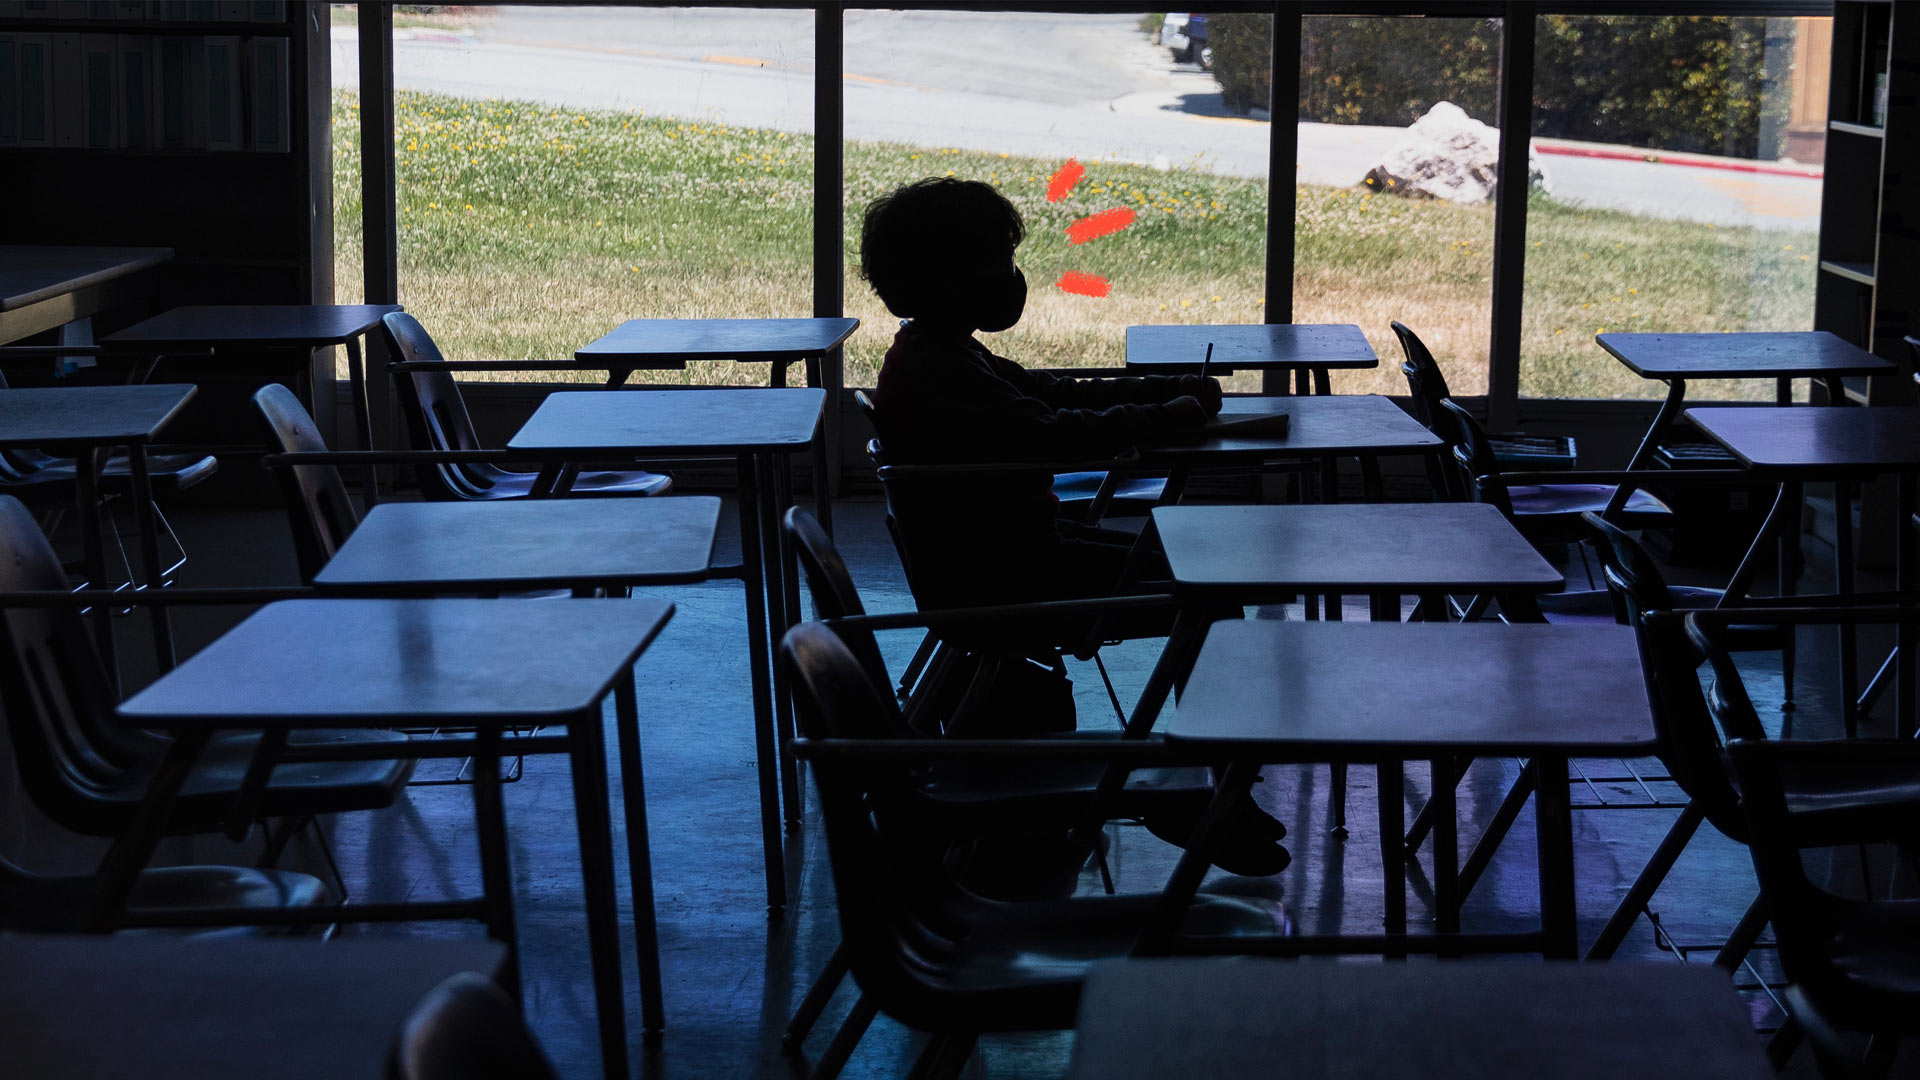 Uma criança está em uma sala de aula vazia